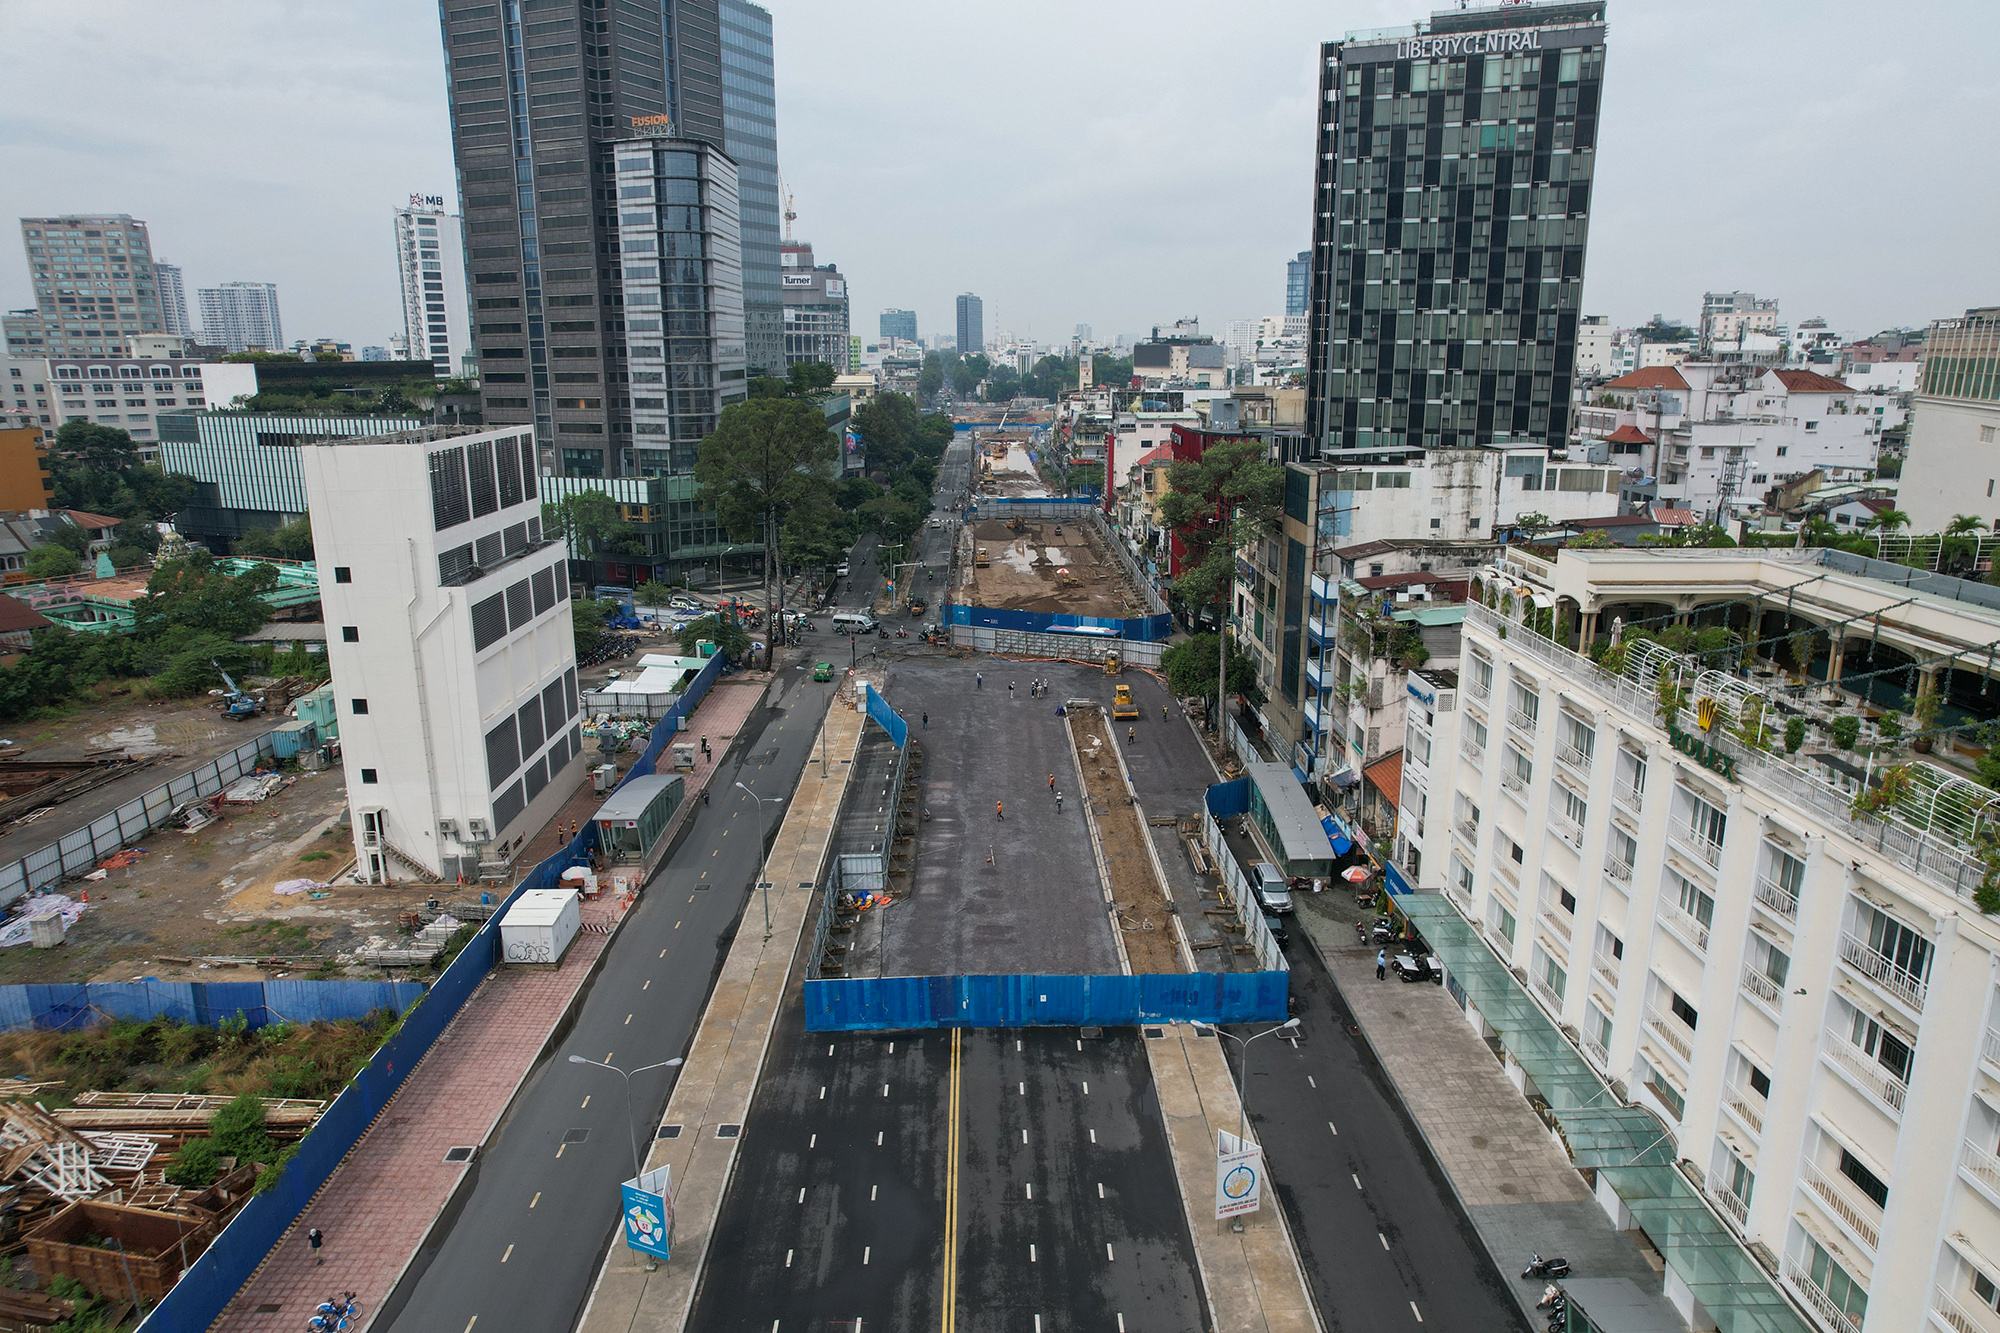 Tháng 10/2016, đường Lê Lợi, quận 1 dựng rào chắn để thi công gói thầu 1A (đoạn từ Nhà hát Thành phố đến ga Bến Thành, dài 515m) của dự án metro số 1 Bến Thành - Suối Tiên. Đến nay gói thầu này đã đạt hơn 95%, mặt hầm đã được đóng, chỉ còn thi công ngầm bên dưới.